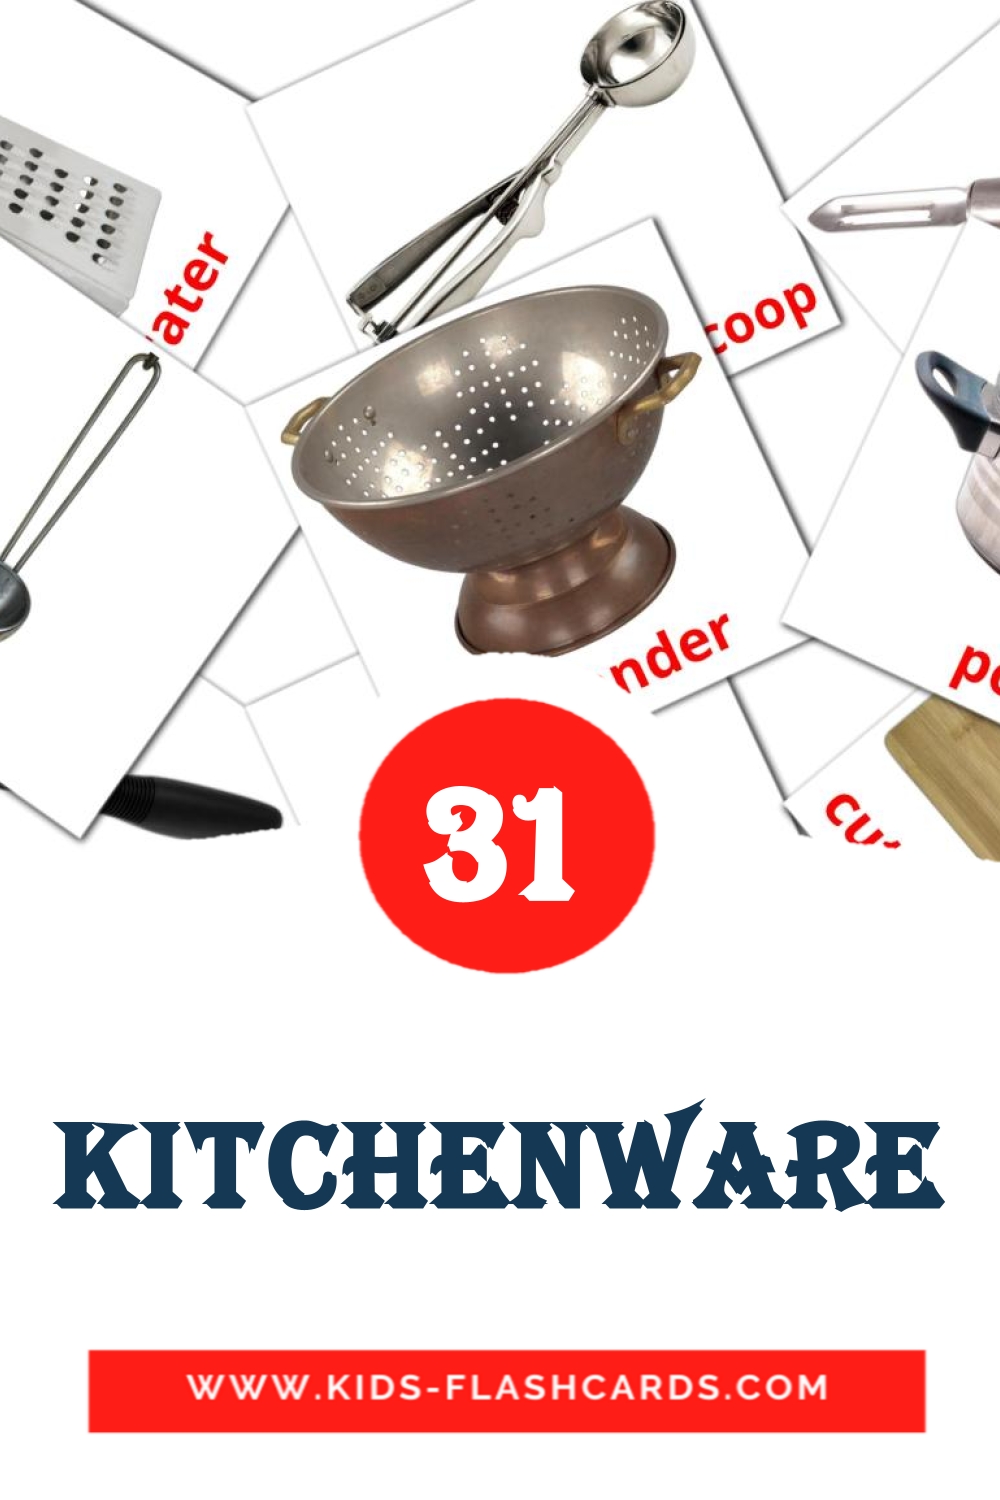 35 carte illustrate di Kitchenware per la scuola materna in inglese